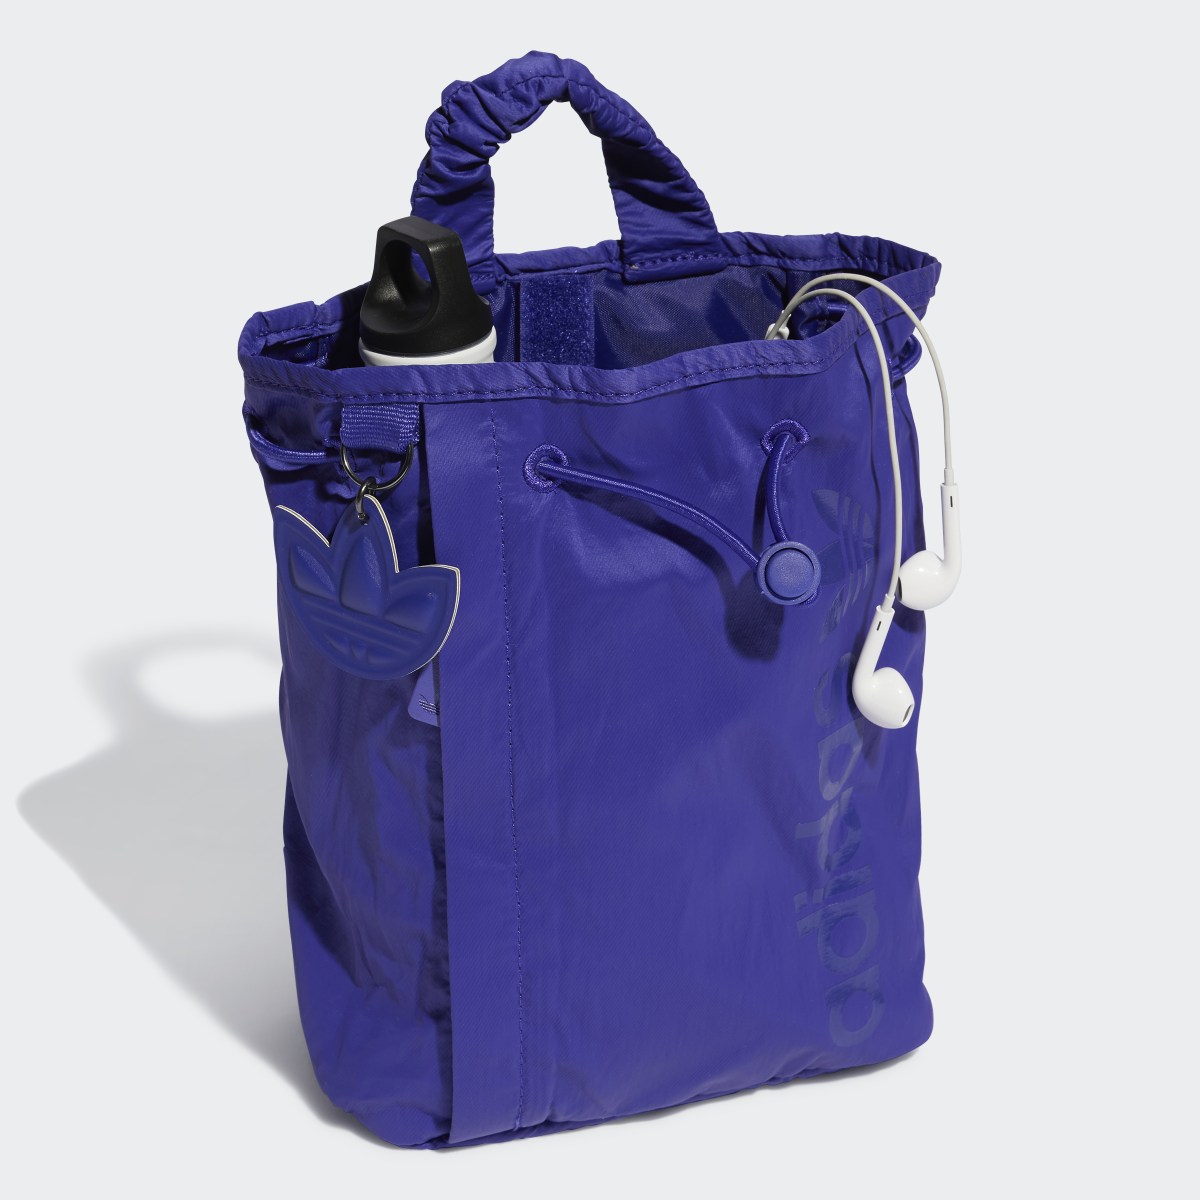 Adidas Satin Mini Bucket Backpack. 5